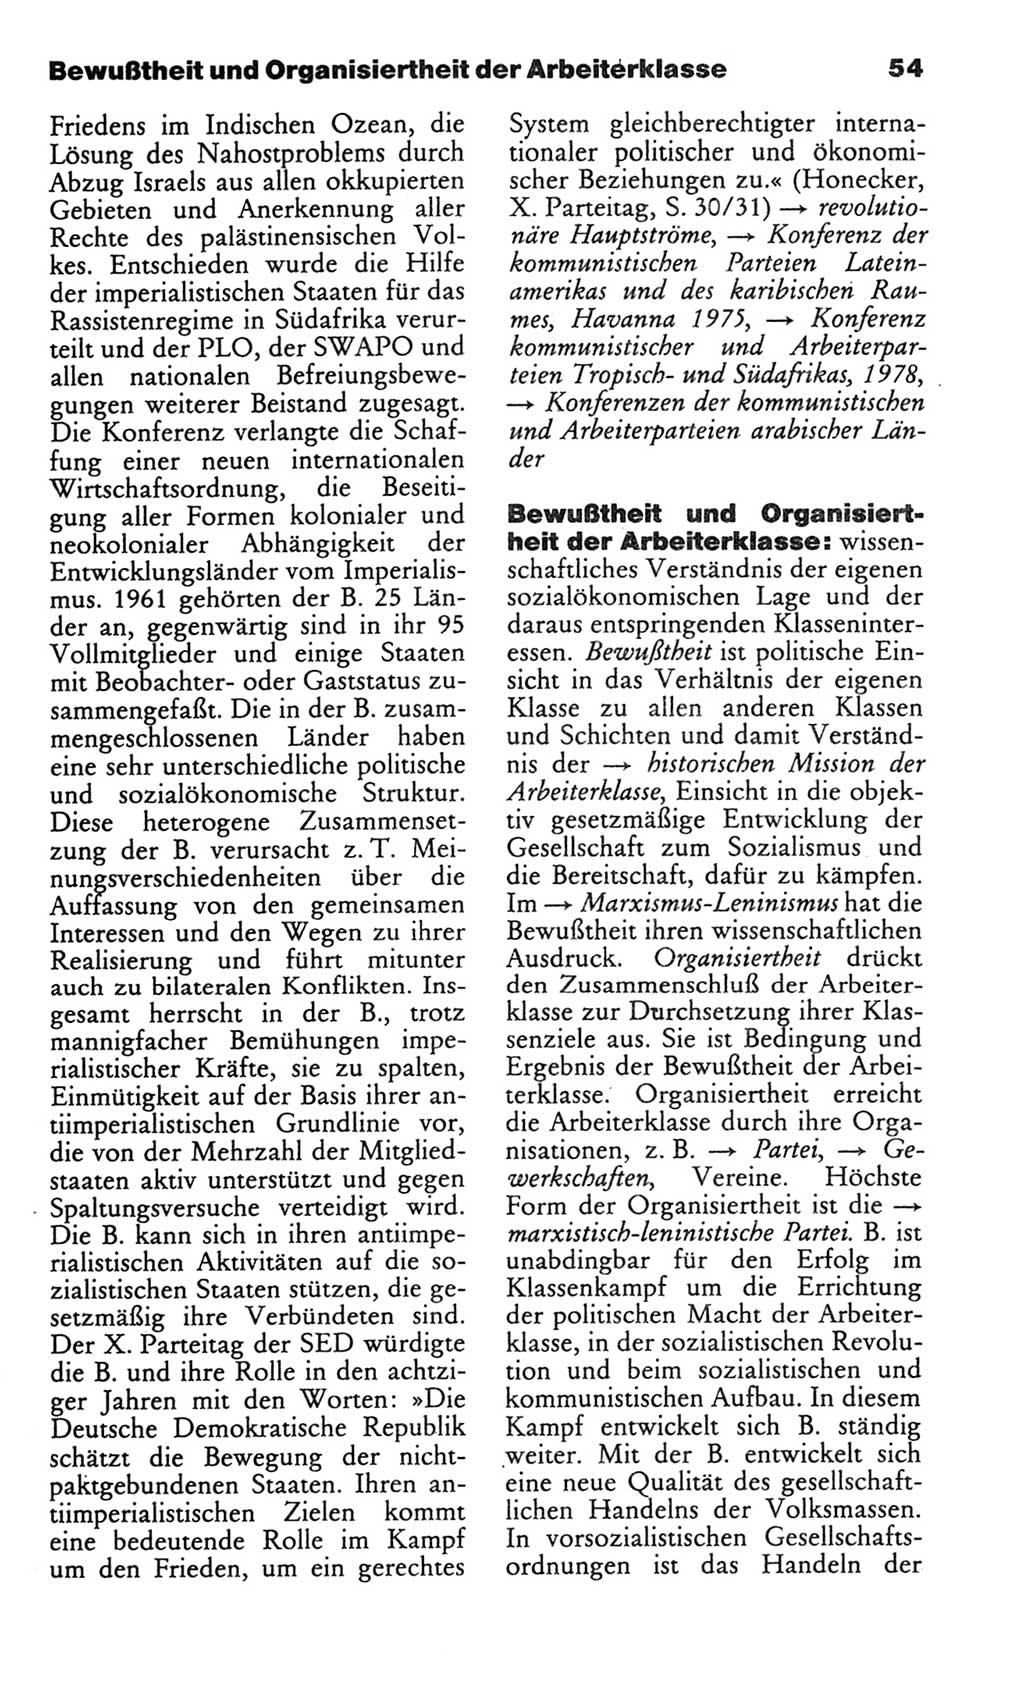 Wörterbuch des wissenschaftlichen Kommunismus [Deutsche Demokratische Republik (DDR)] 1982, Seite 54 (Wb. wiss. Komm. DDR 1982, S. 54)